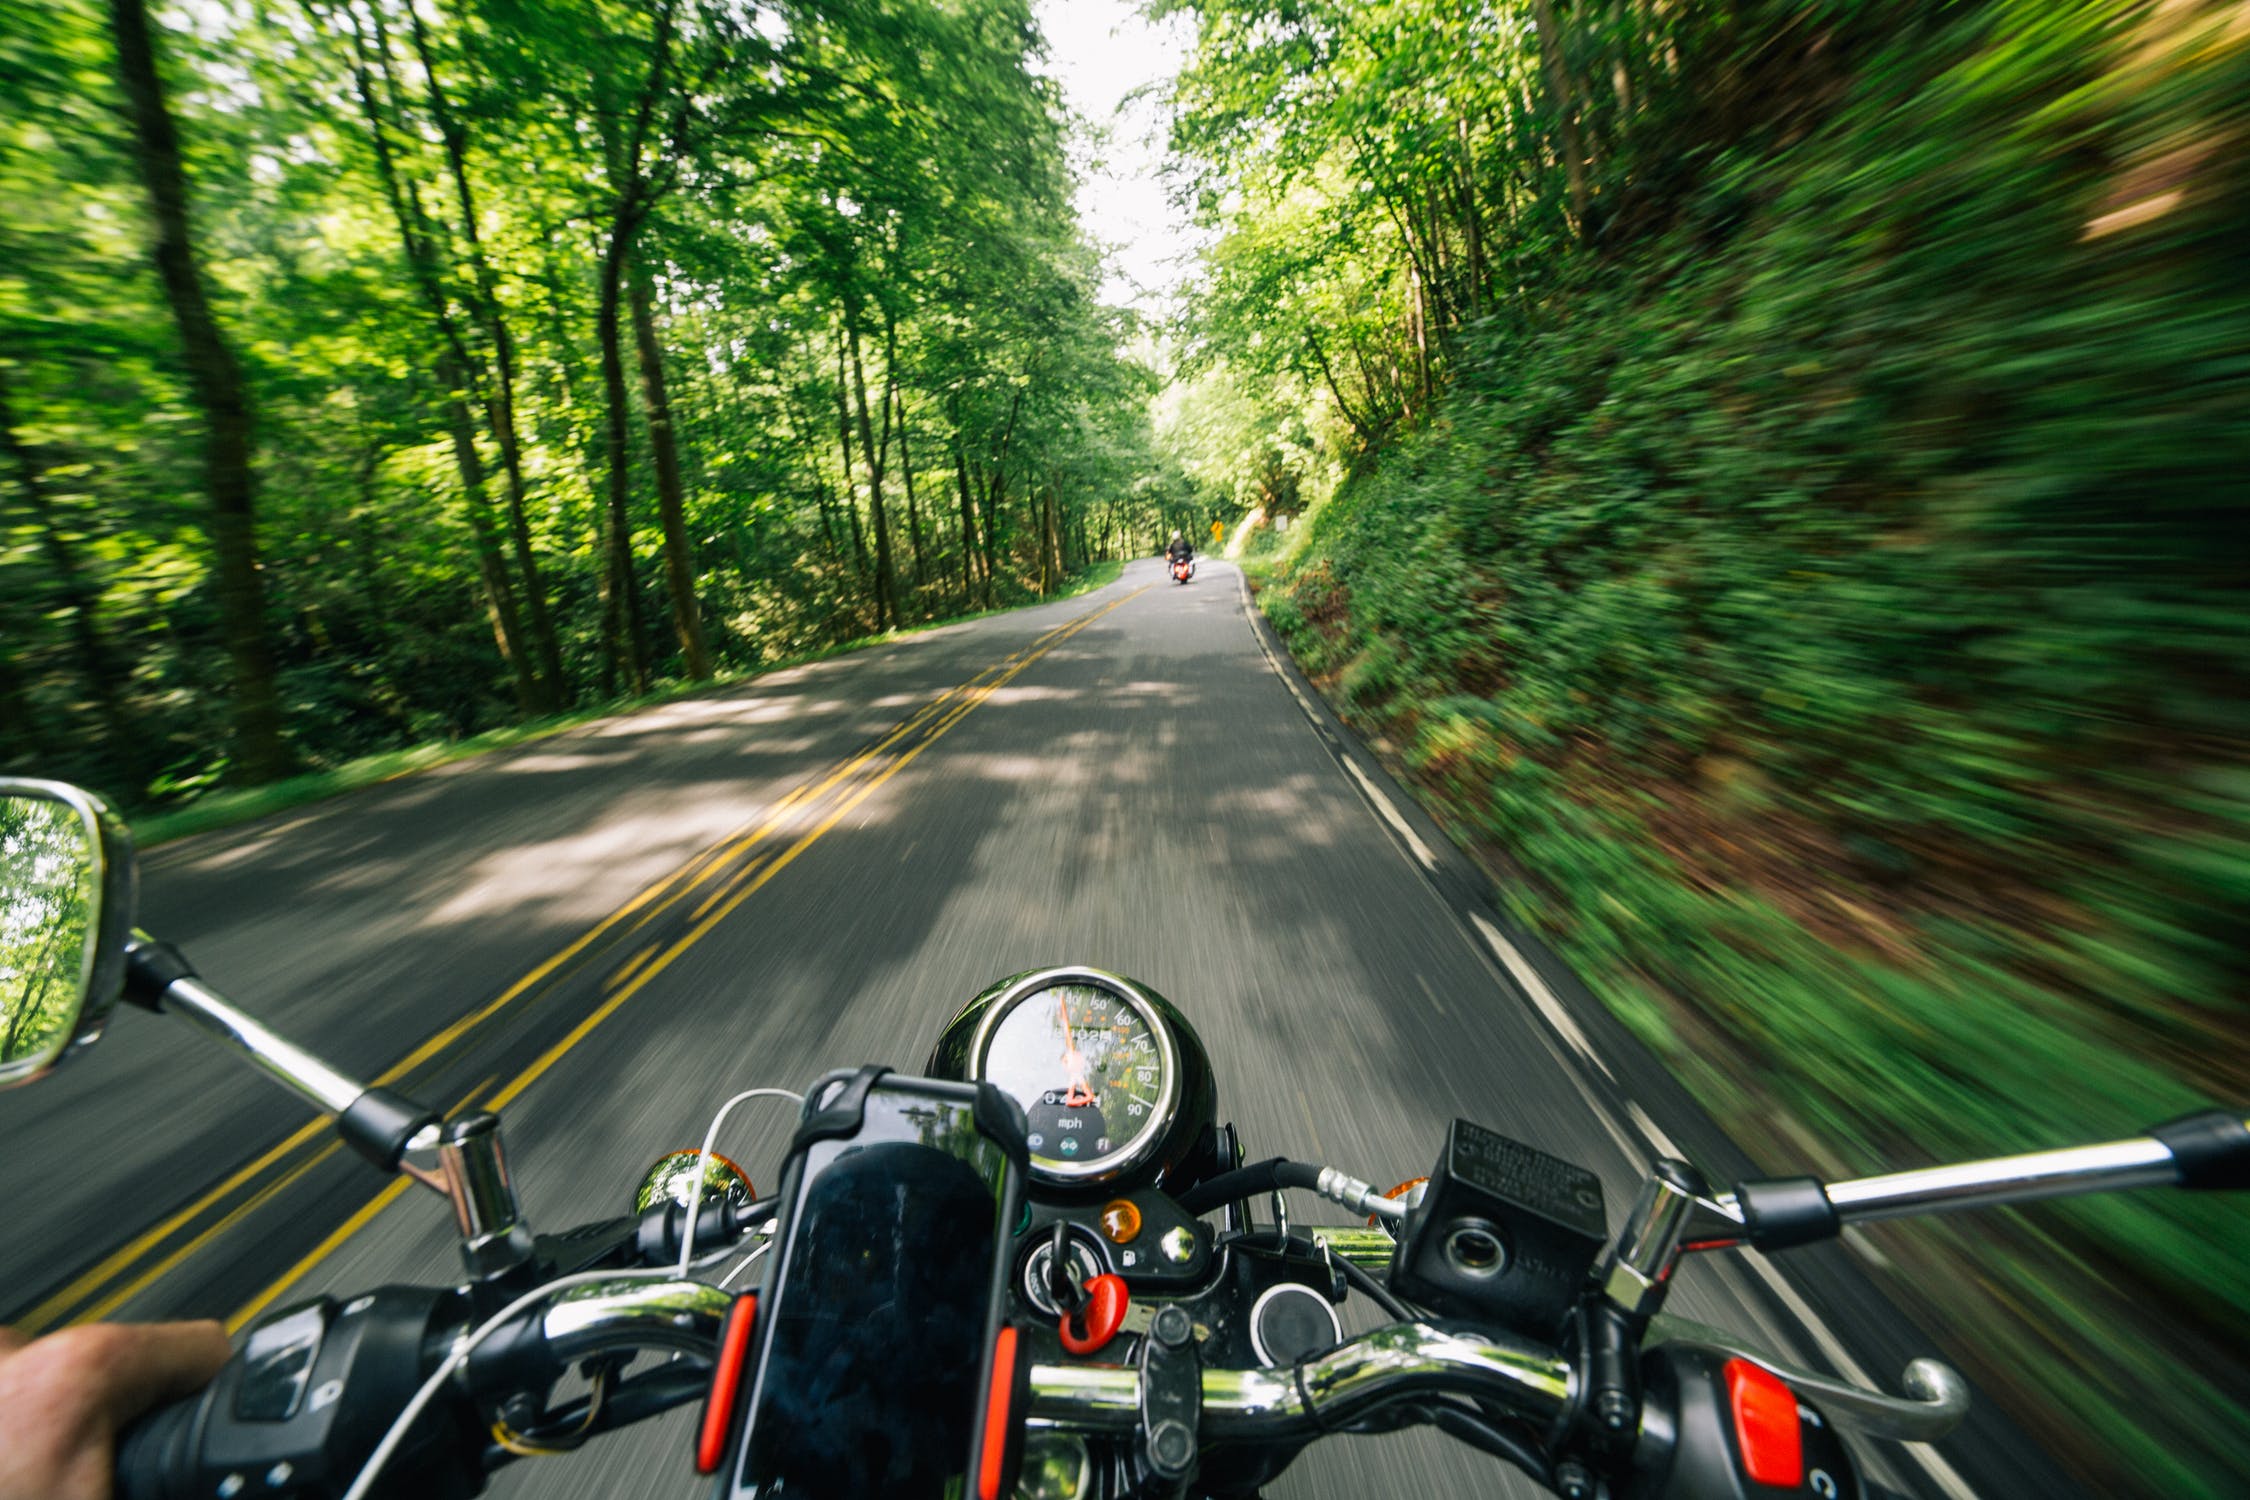 Motocycliste circulant le long d'une route entourée de végétation. | Image : Pexels